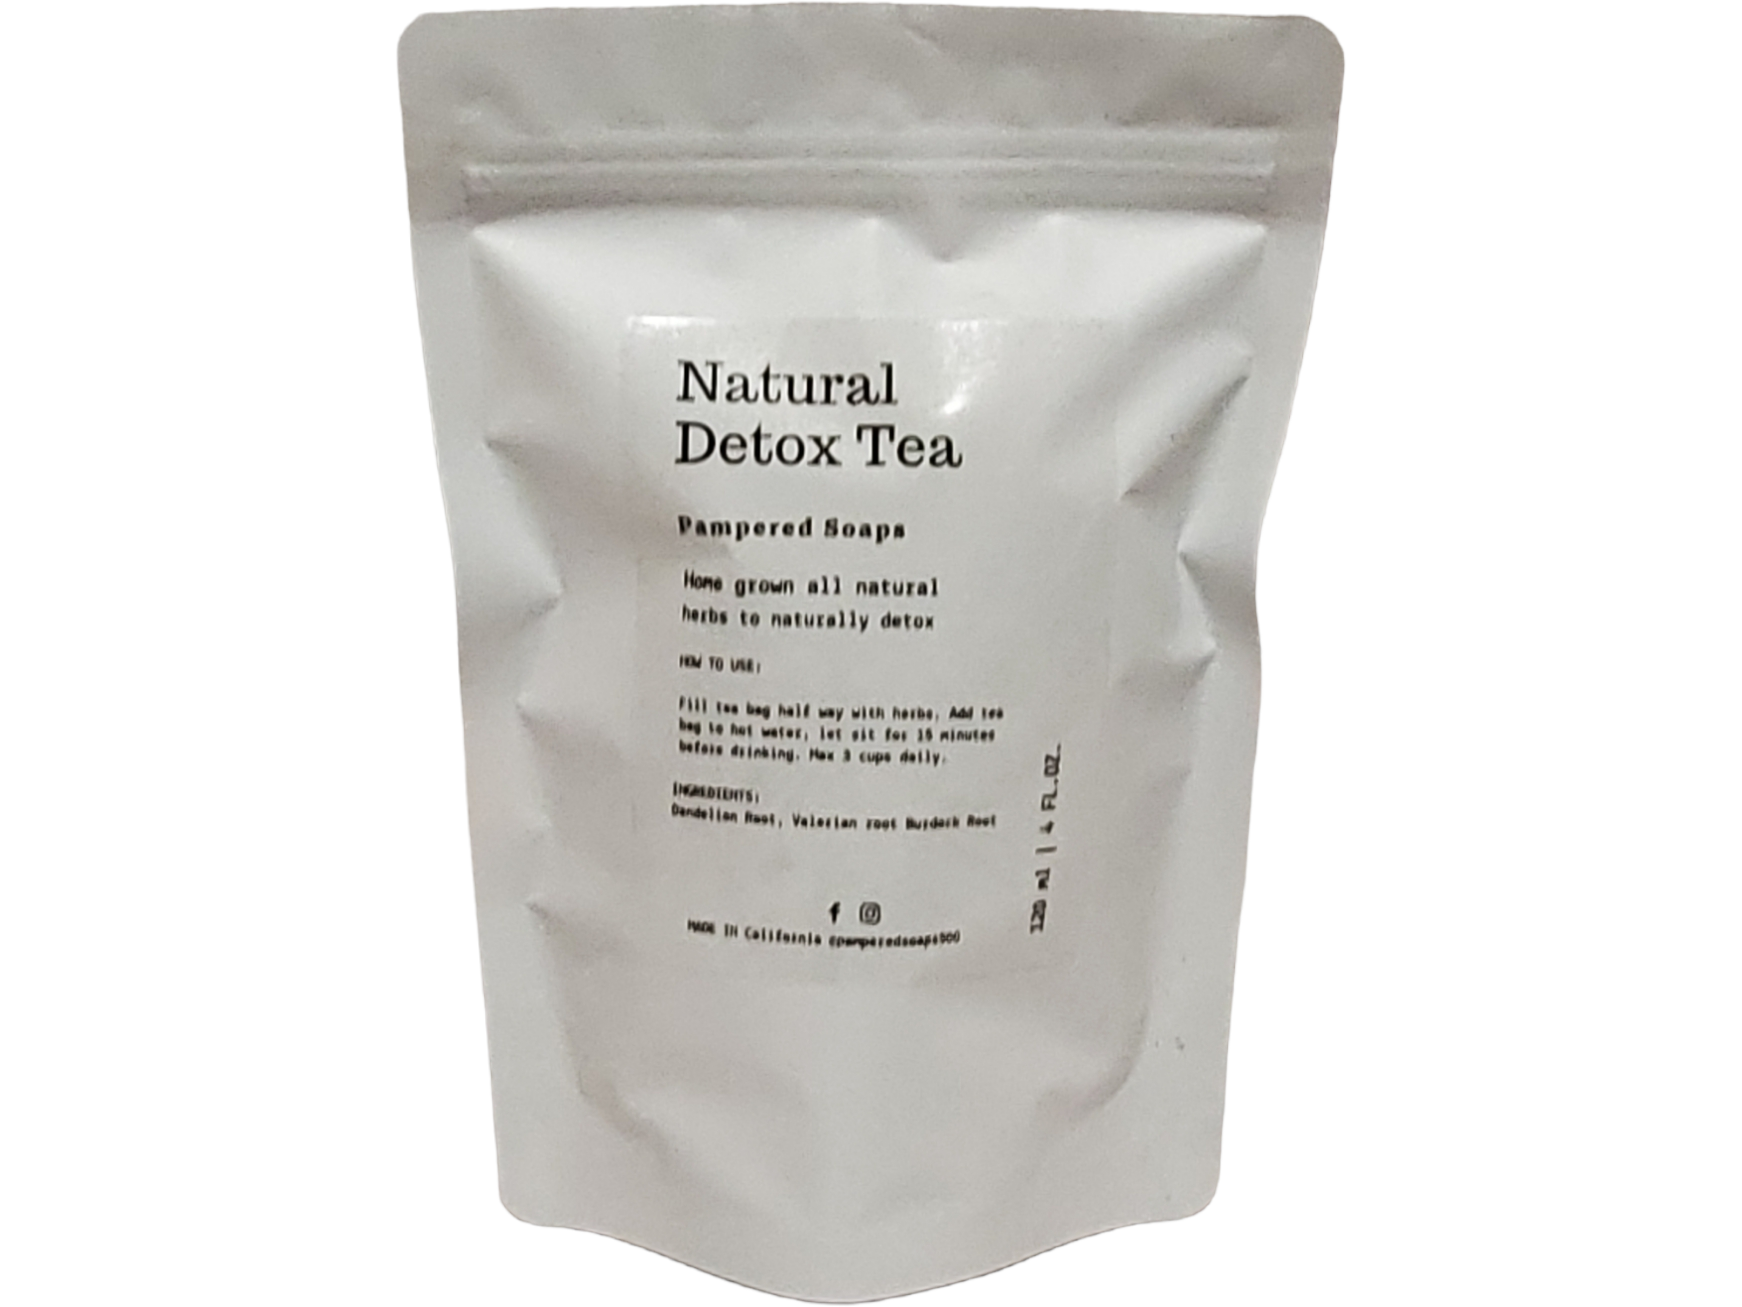 All Natural Detox Tea Pampered Soaps